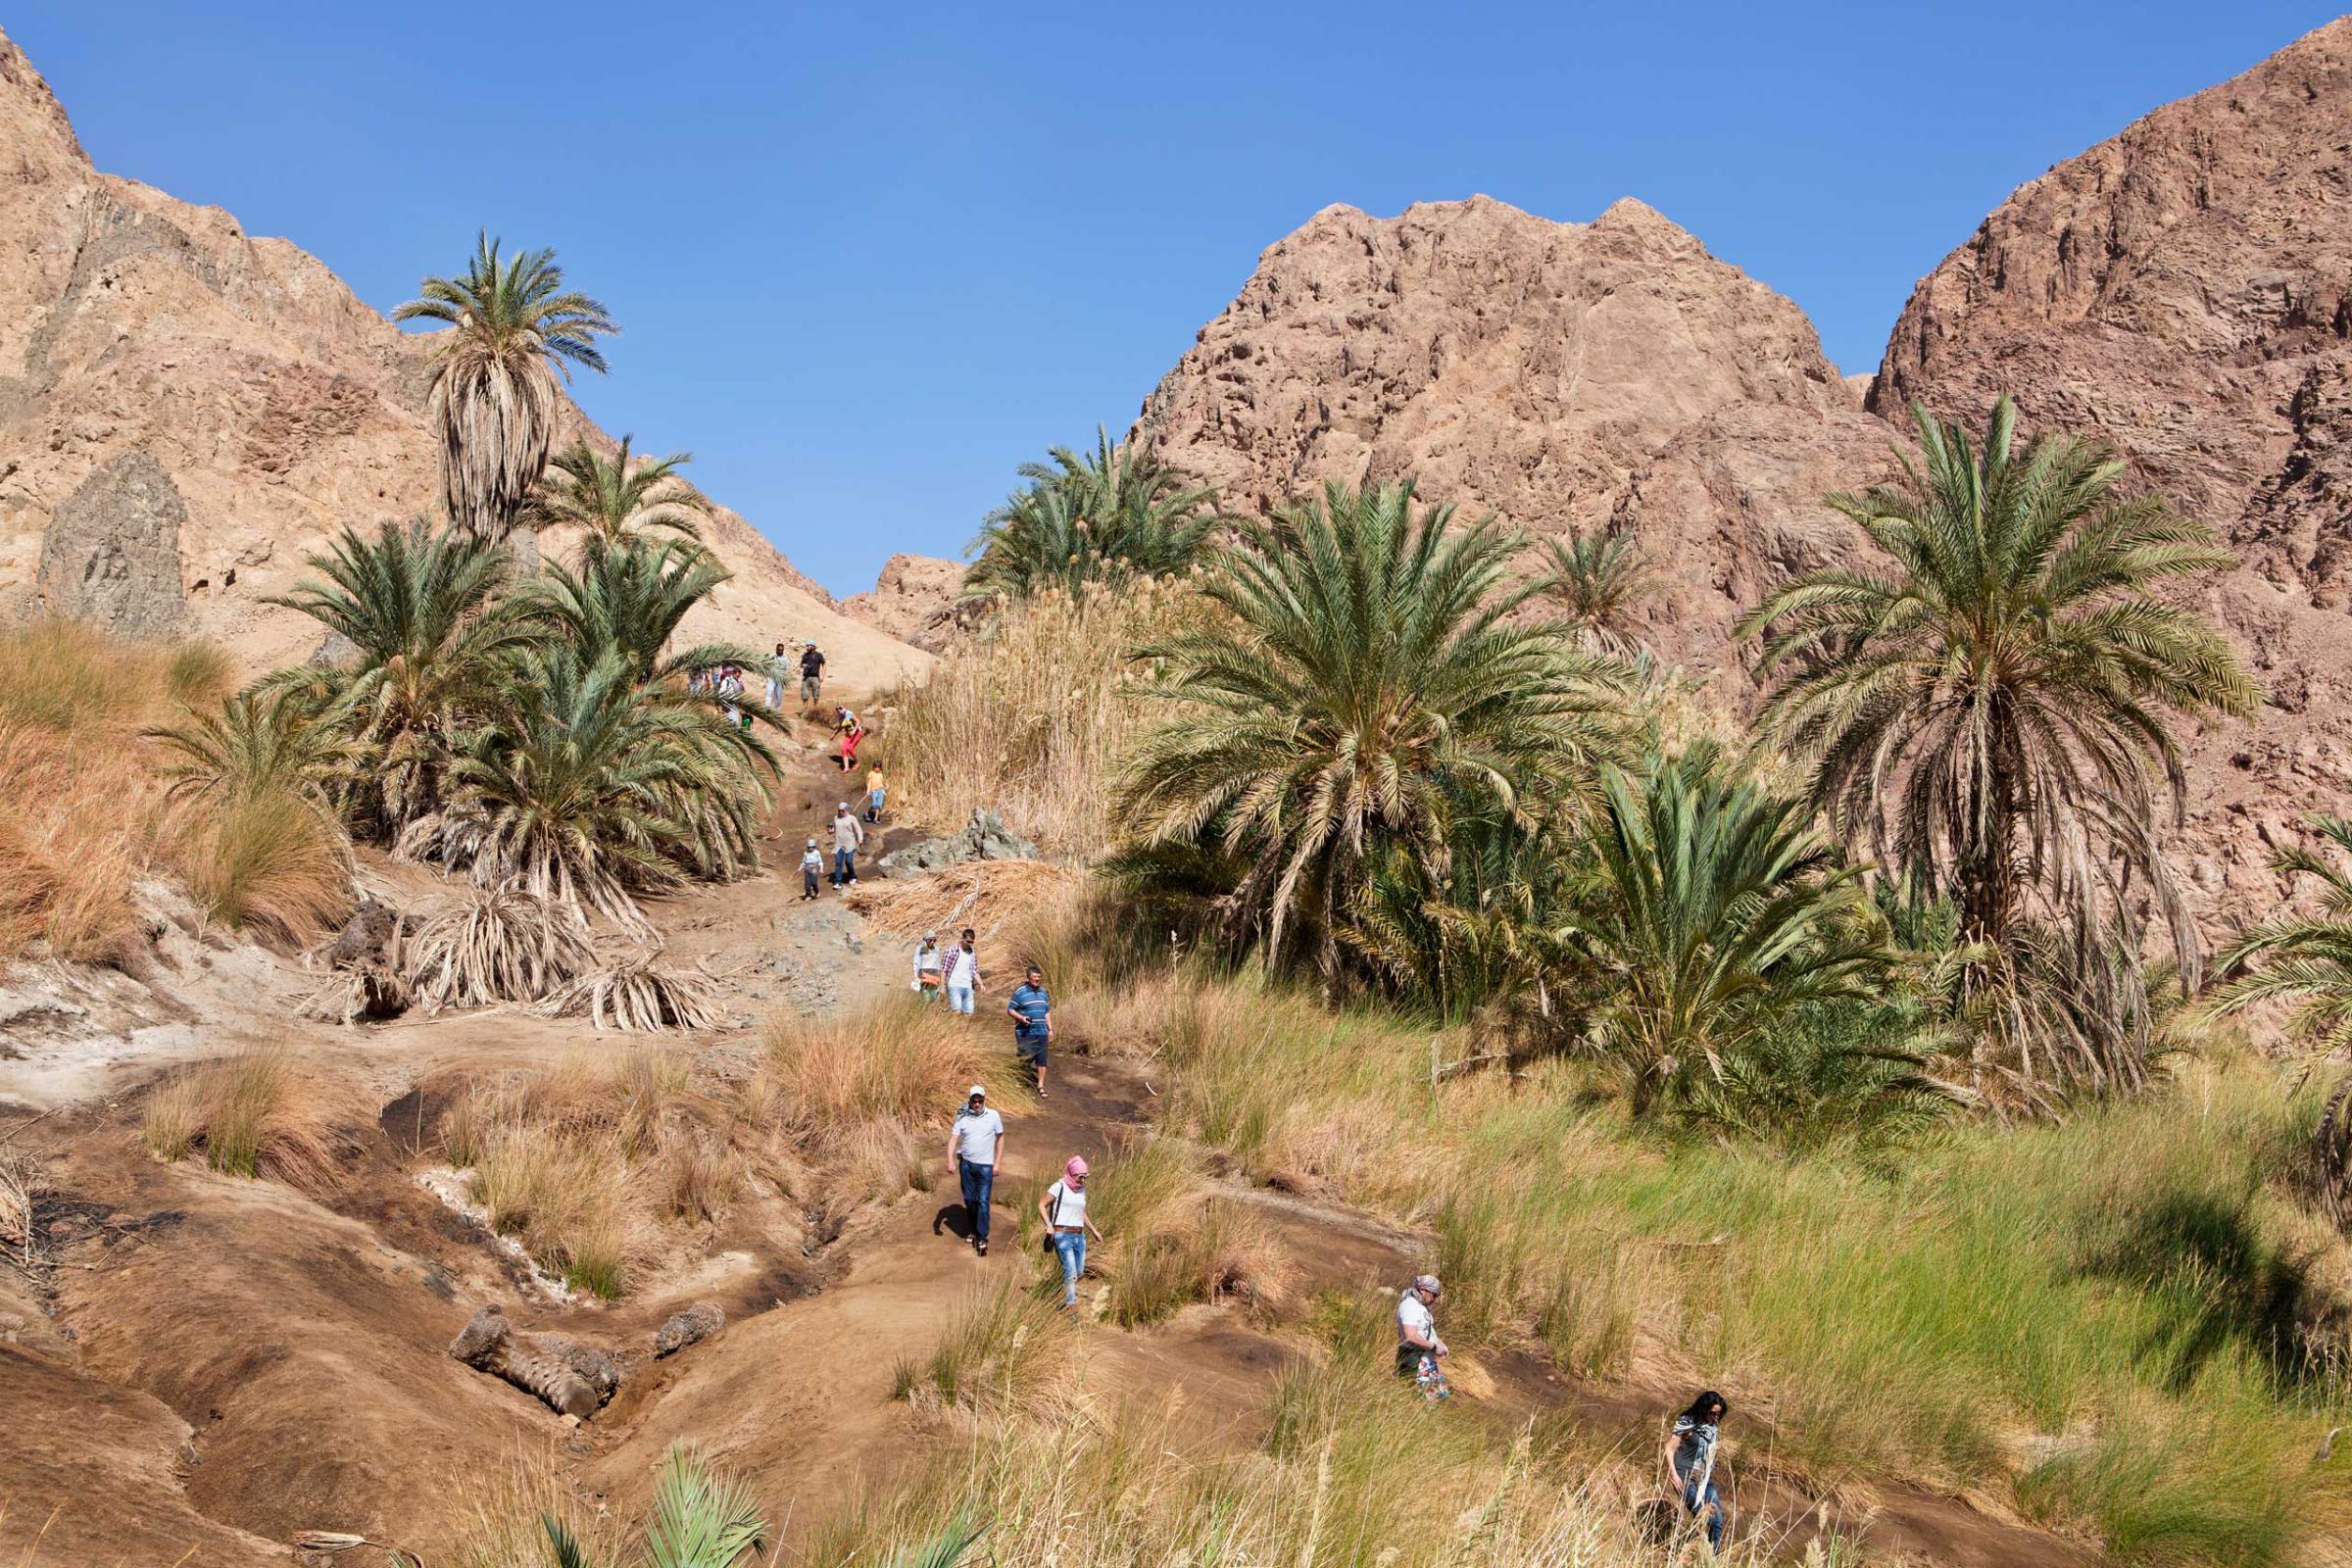 Sinai Park